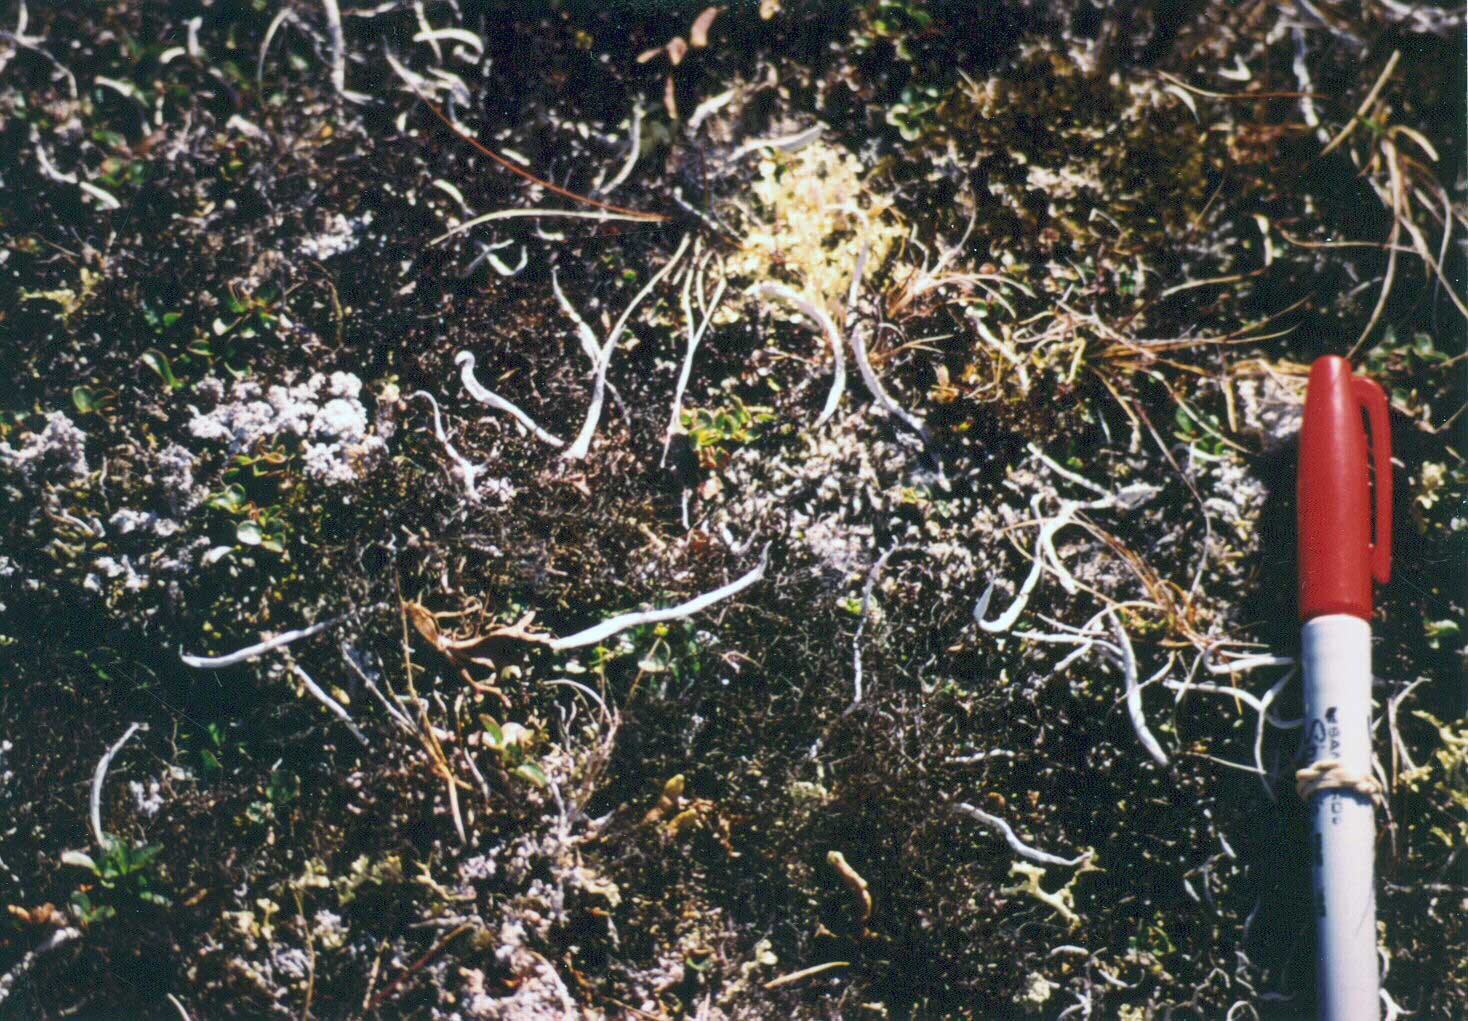 Photo B. Close up showing the abundant lichens (<em>Thamnolia vermicularis</em>, <em>Cetraria nivalis</em>, <em>Ochrolechia frigida</em>, <em>Cetrariella delisei</em>). Elias et al. 1996, Fig. A-23, lower photo. D.A. Walker.